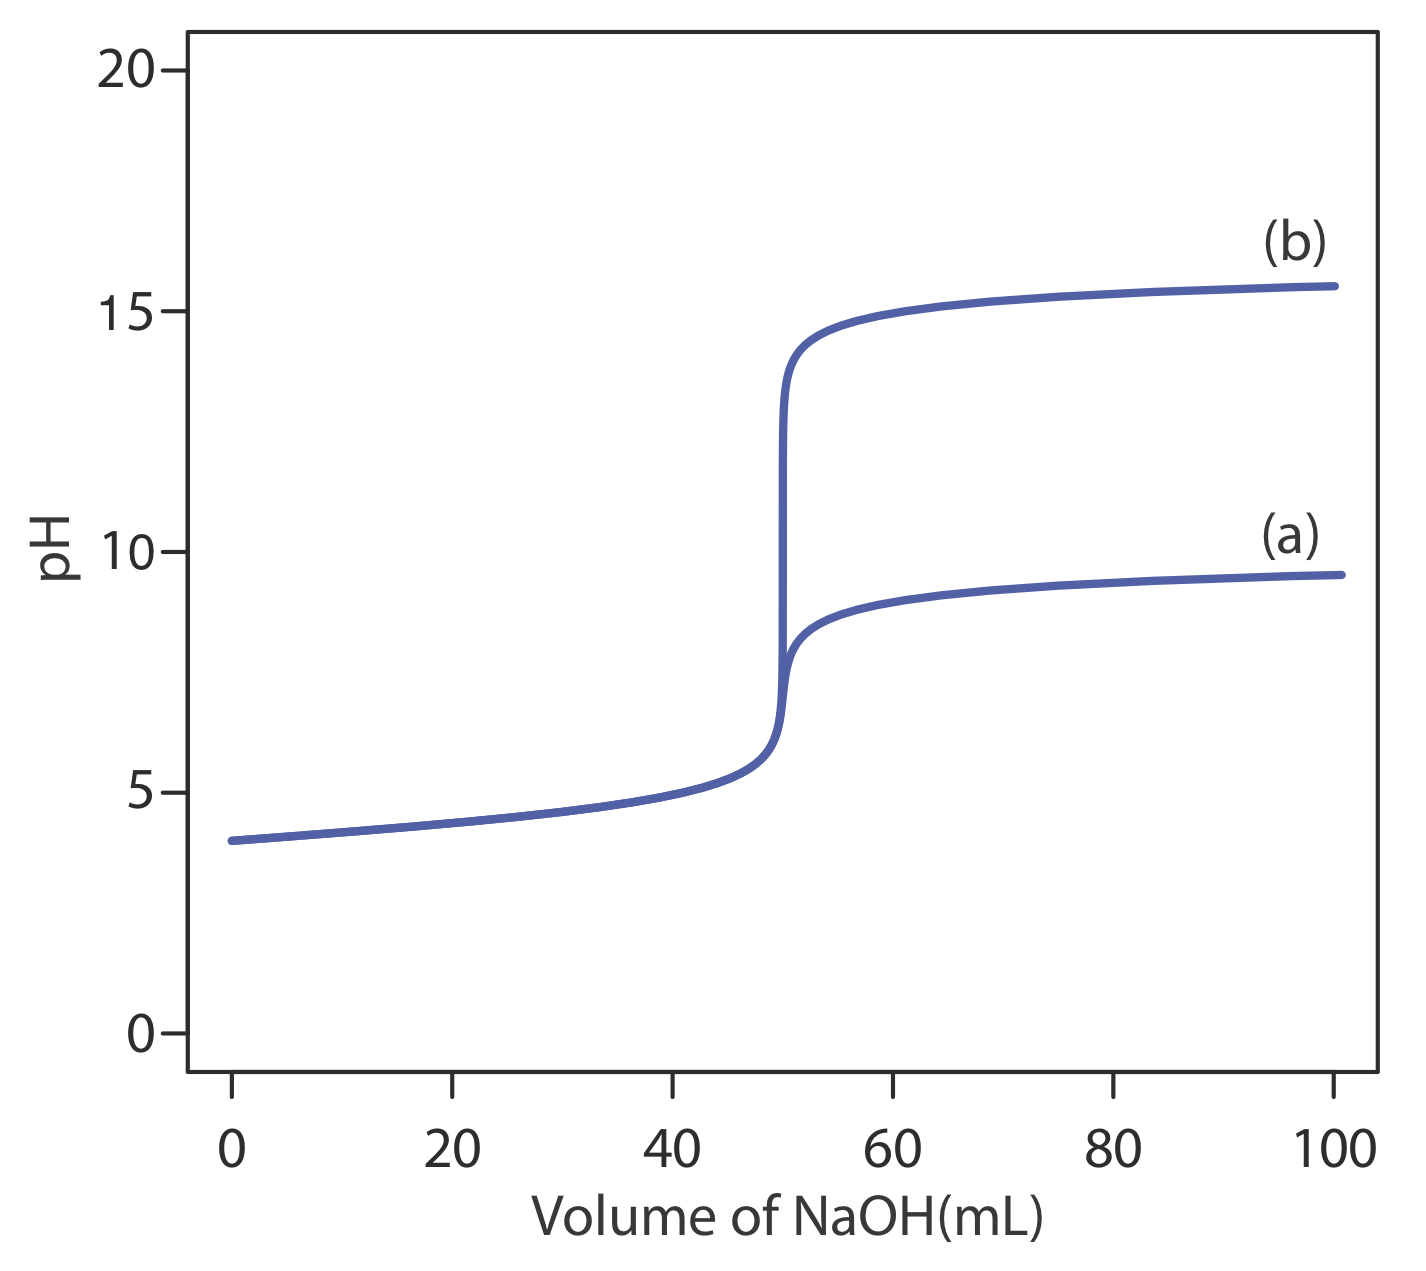 La curva de valoración de solventes no acuosos es capaz de alcanzar niveles de pH más altos que la curva de valoración del agua.